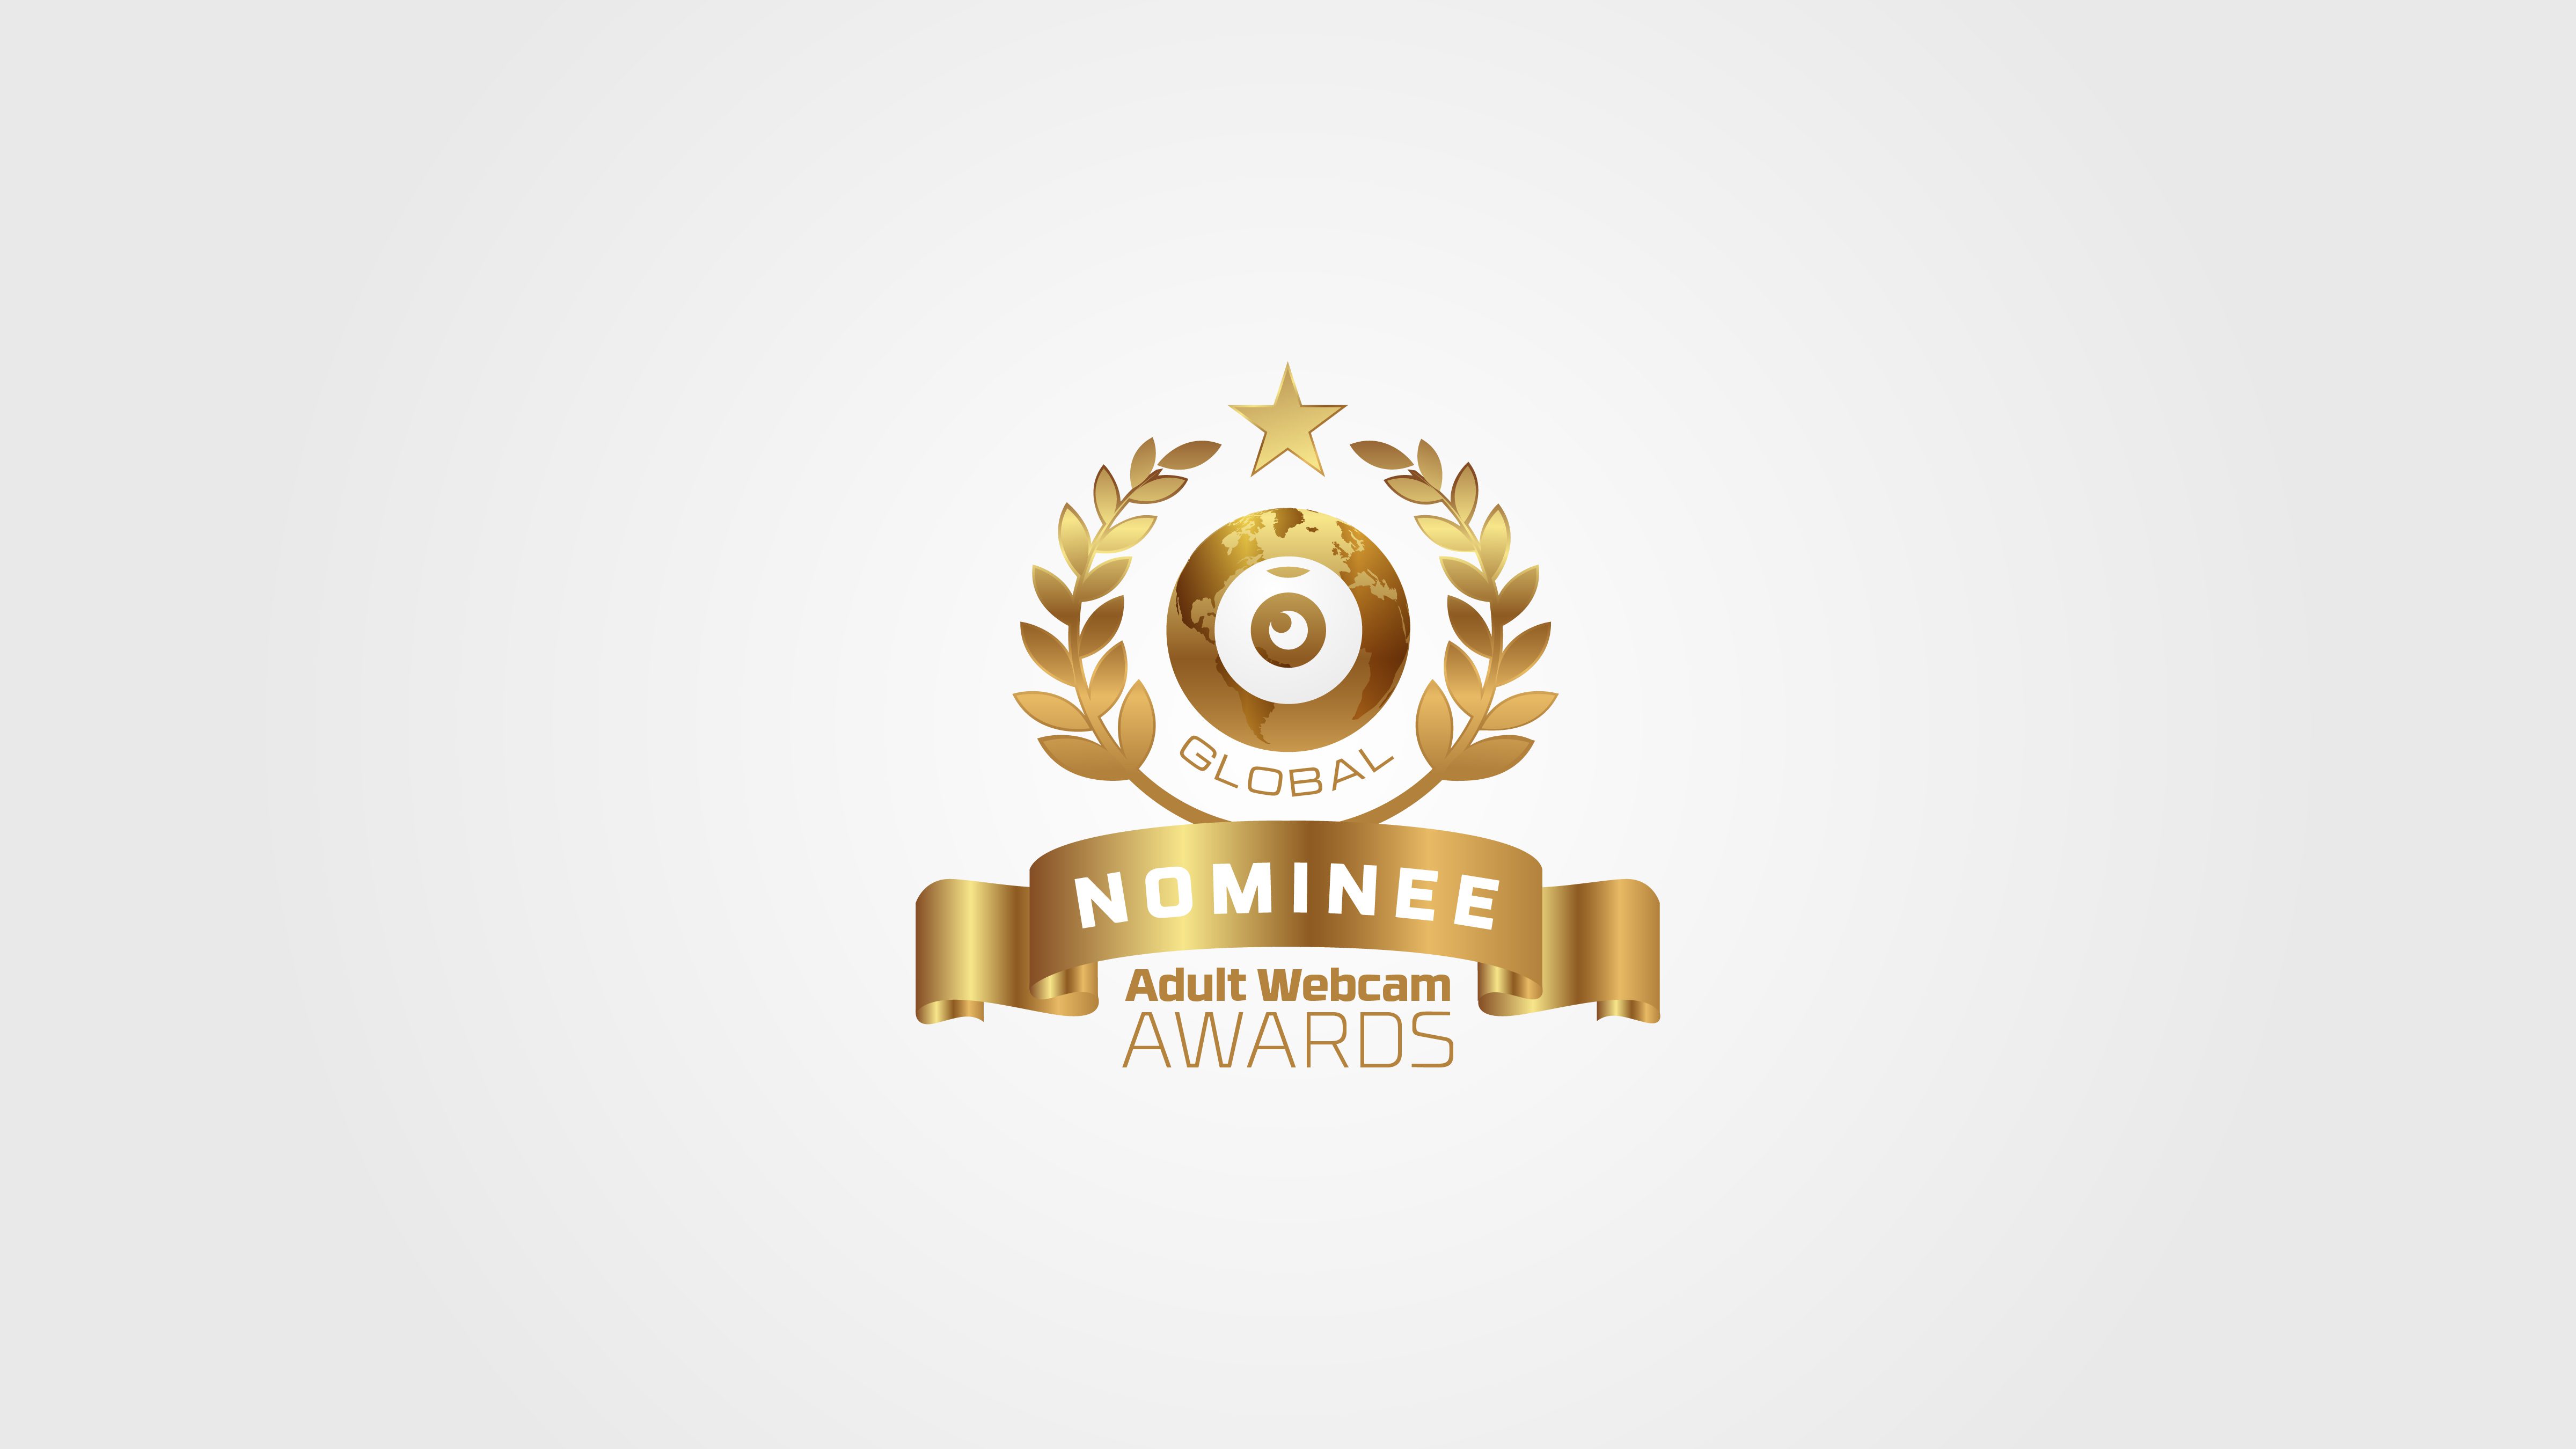 Adult Webcam Awards Nomination Info